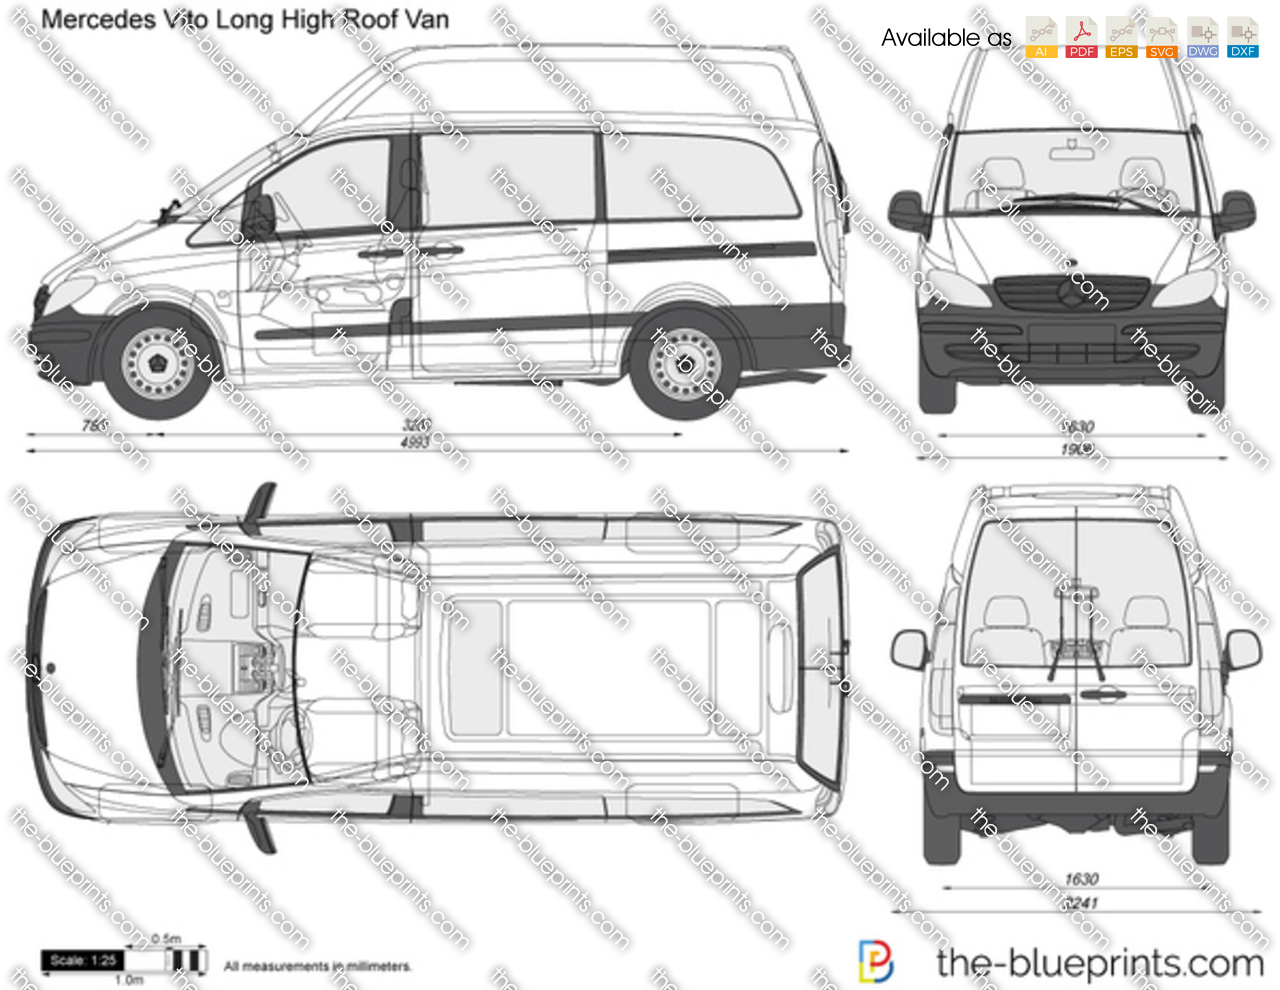 Mercedes-Benz Vito Long High Roof Van